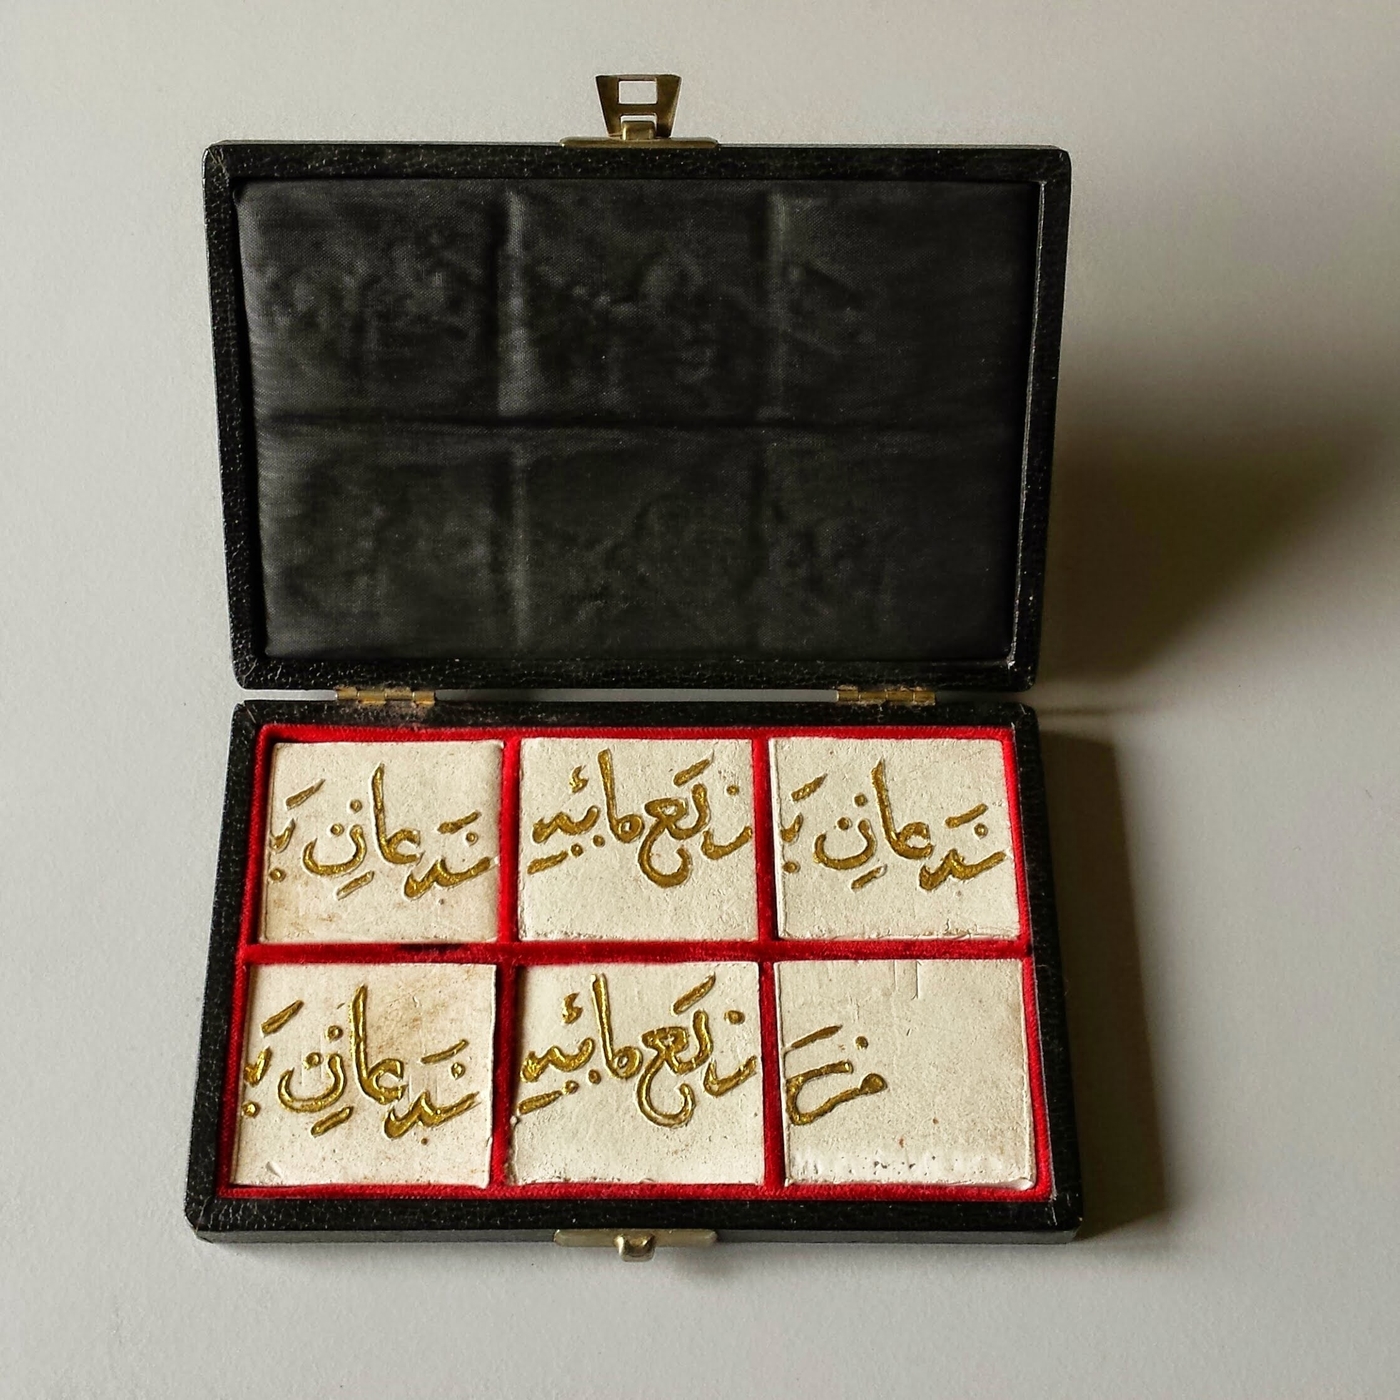 Calligrafia antica, Particolari di calligrafia araba antica dorata, incisa su quadrati di creta bianca poi inseriti in una scatola foderata in pelle.